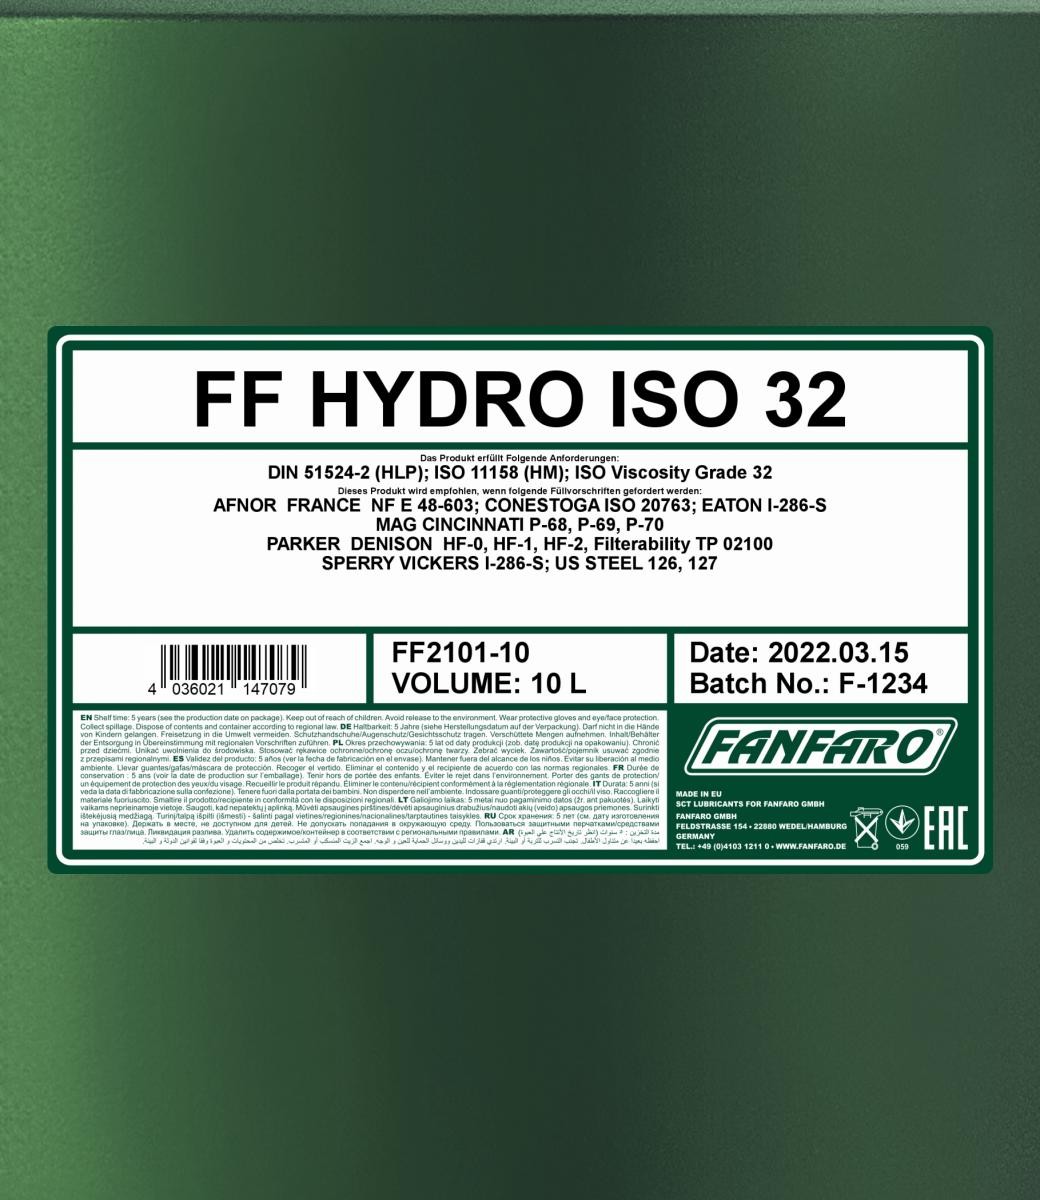 FANFARO Hydraulic fluid FF2101-10